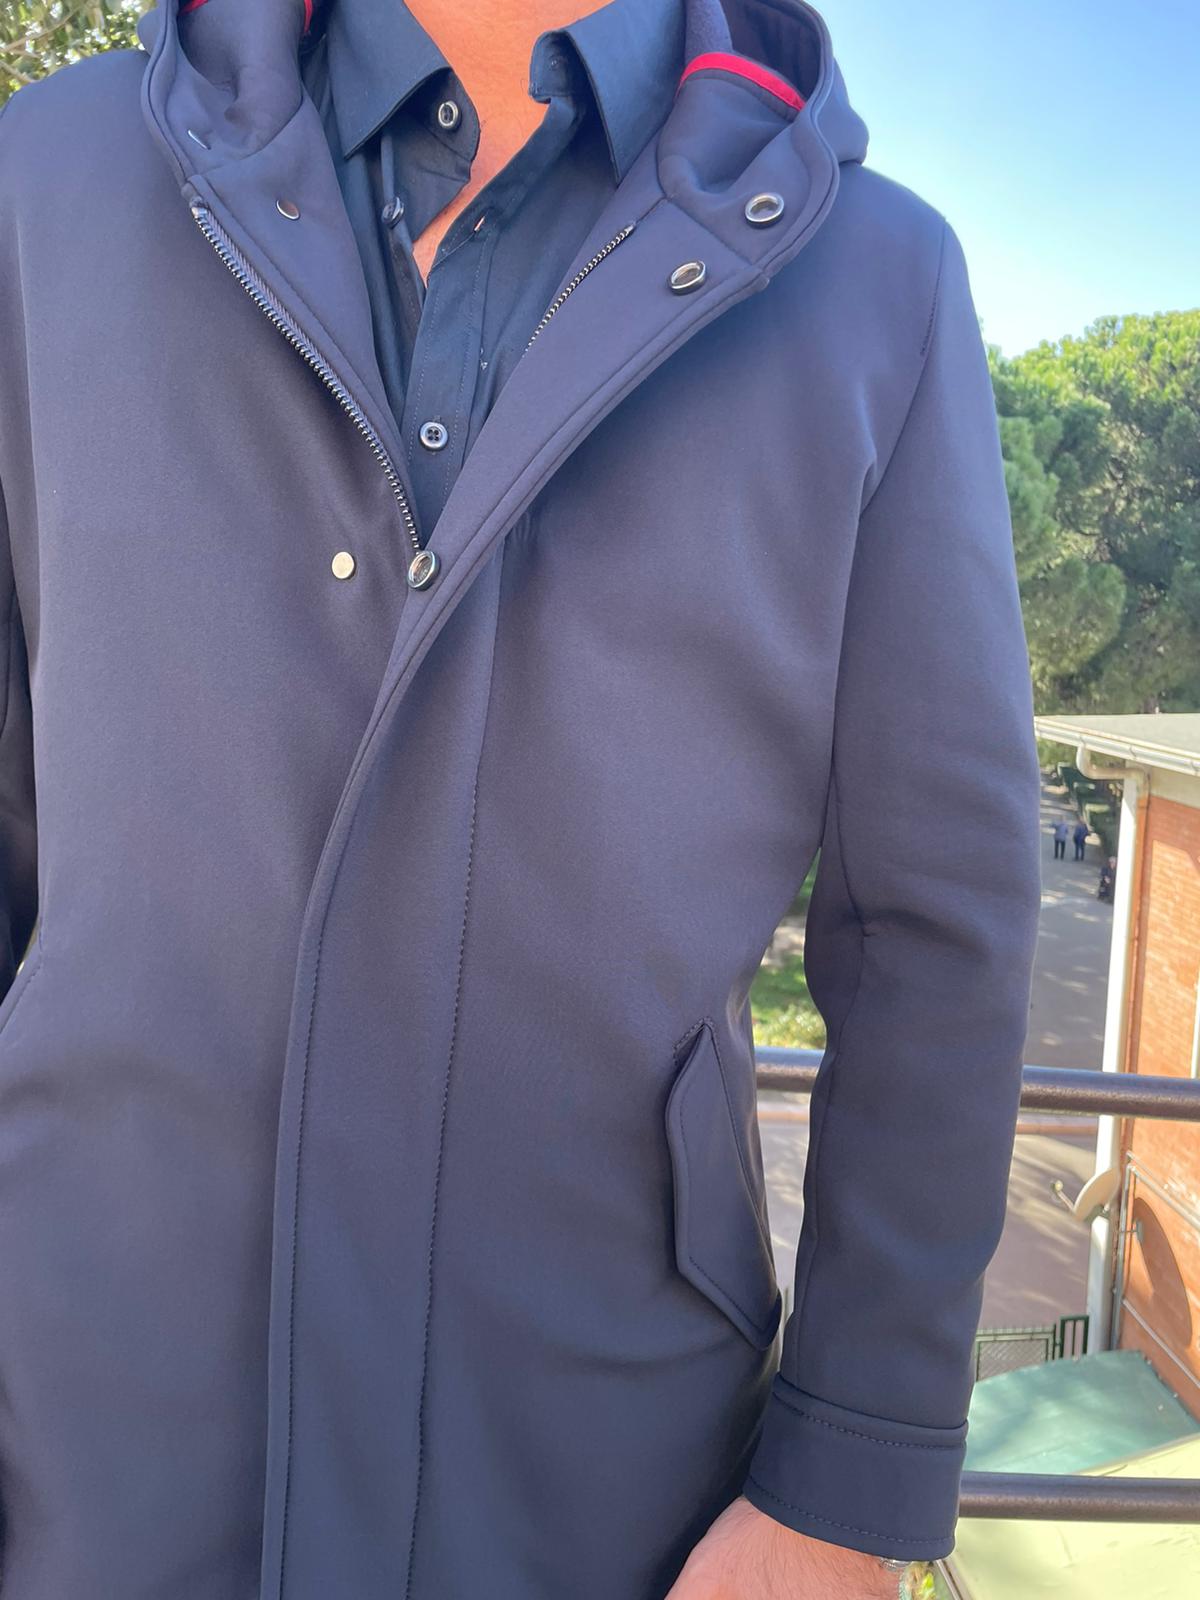 Giaccone cappotto S17 Milano mod Urali lungo con zip